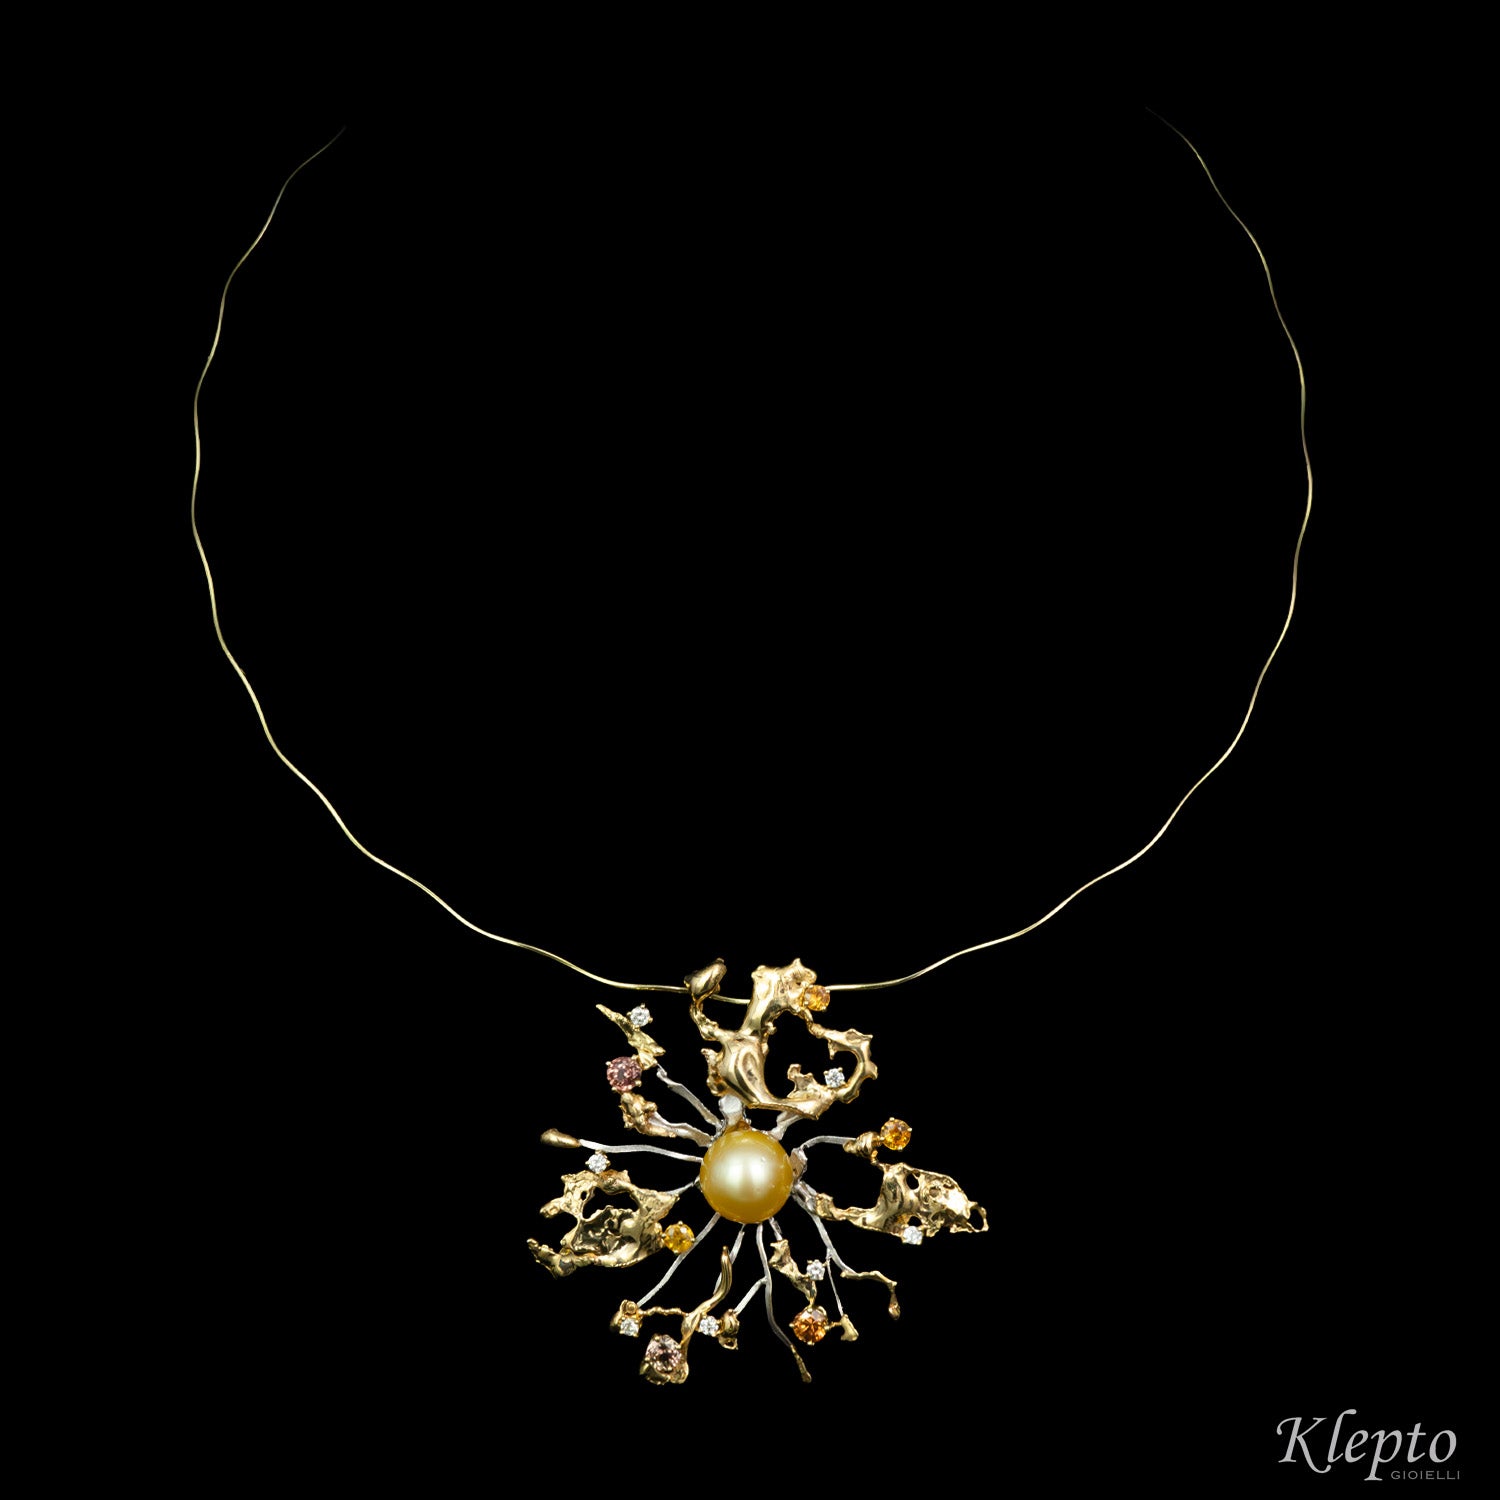 Collier in oro giallo e bianco "Big Bang" con Perla Australiana Gold, Zaffiri e Diamanti